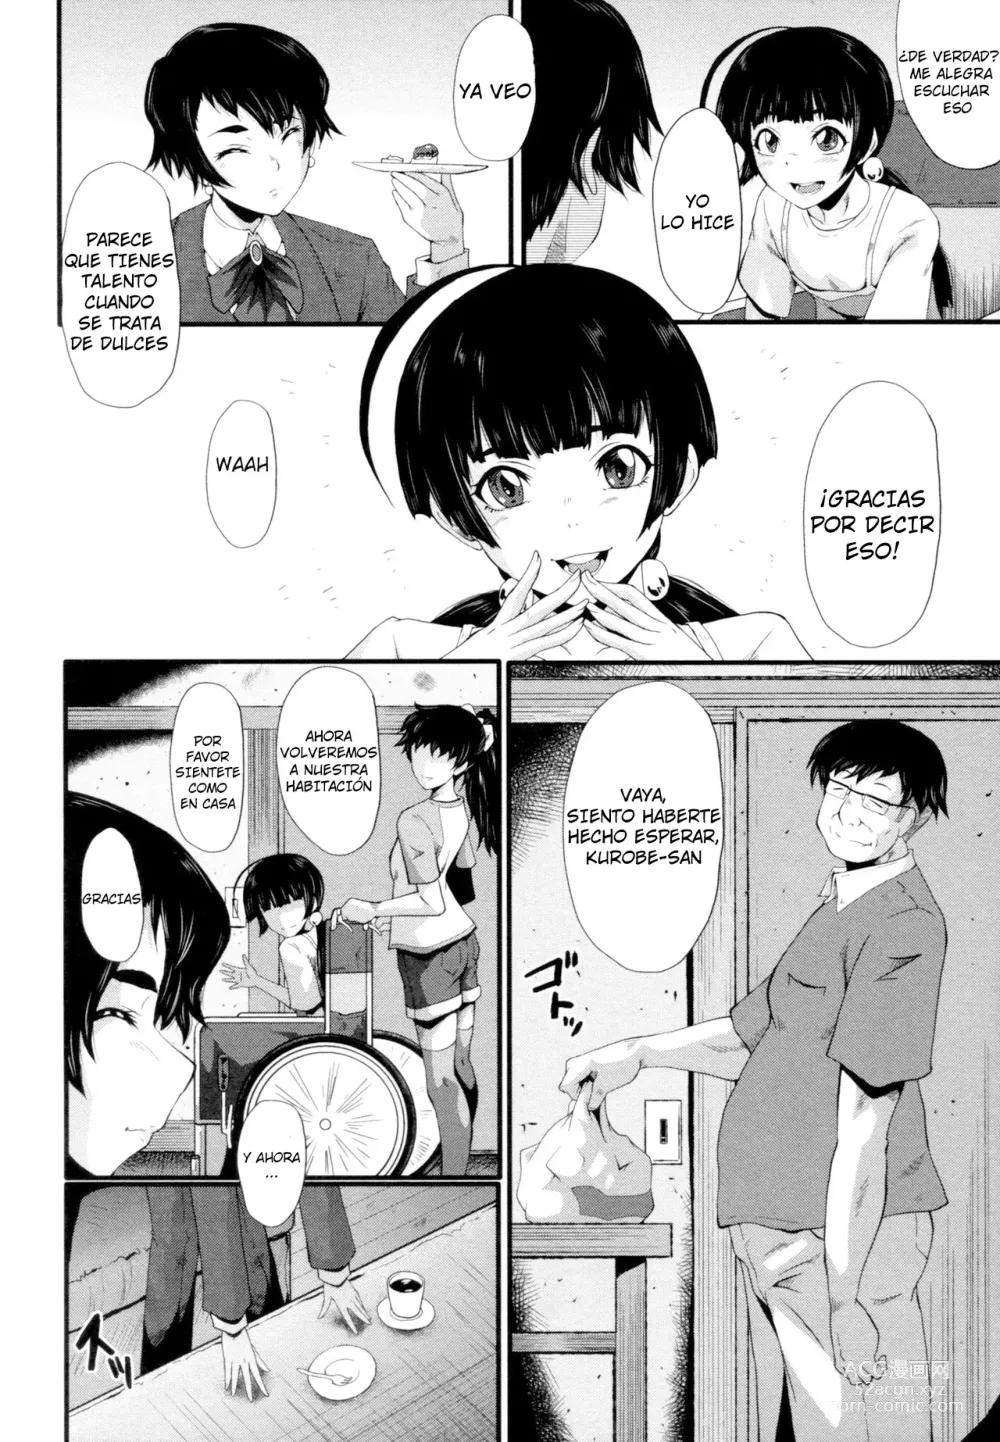 Page 4 of manga Tanoshiki Wagaya Ch. 4